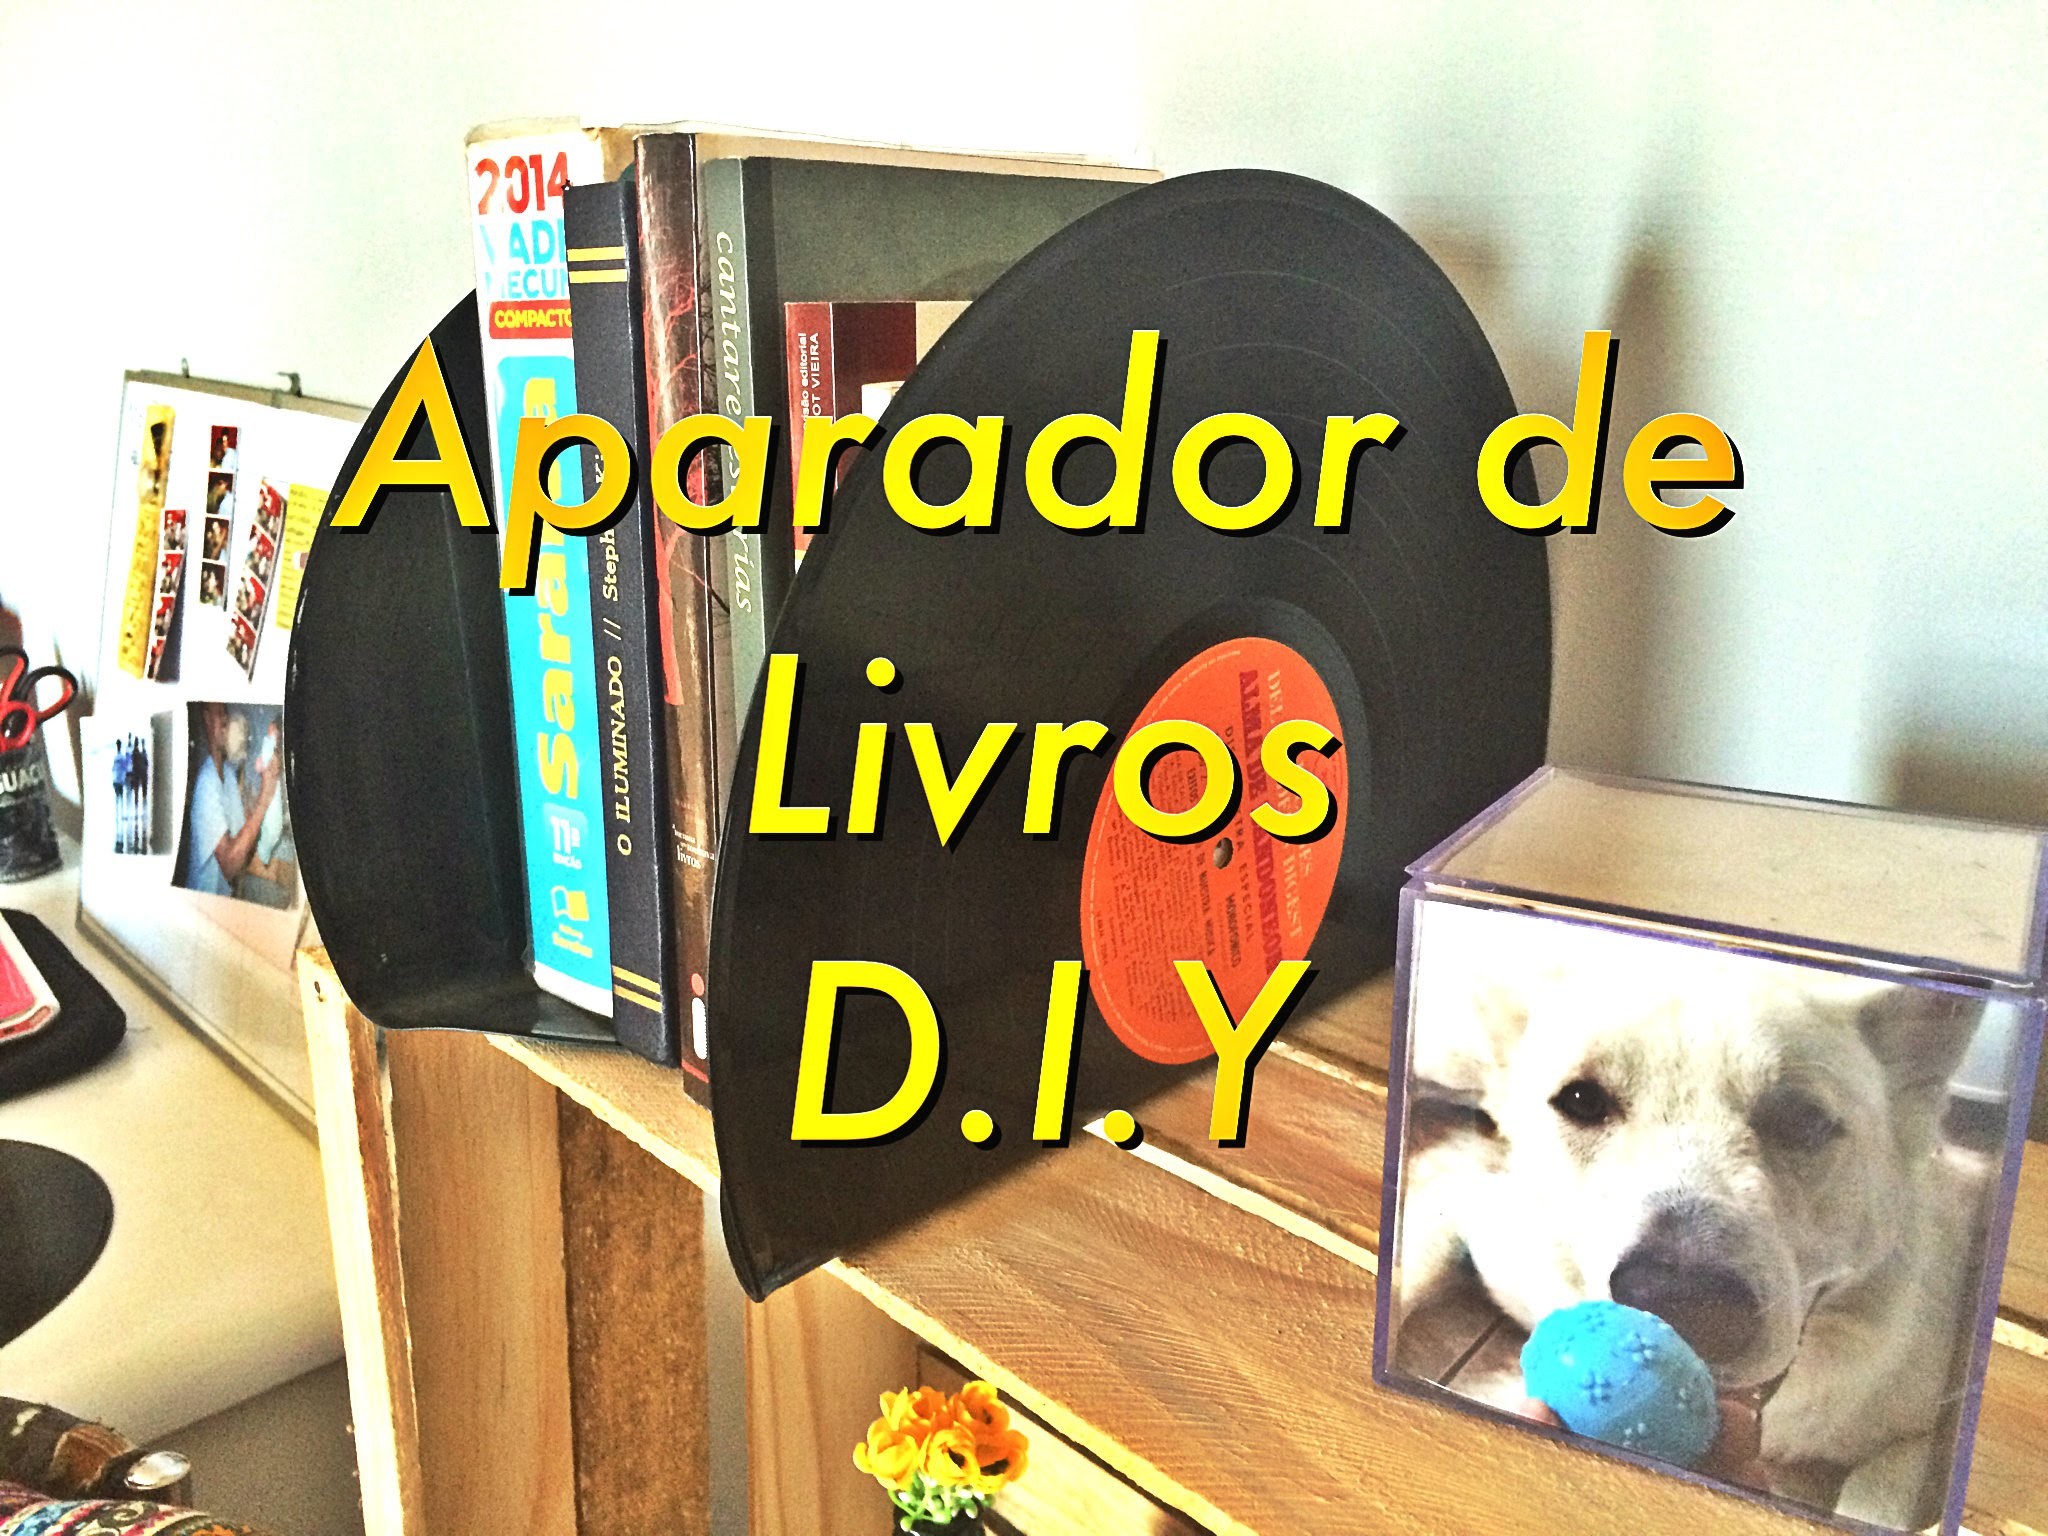 Aparador De Livros | D.I.Y | Bruna Ramos